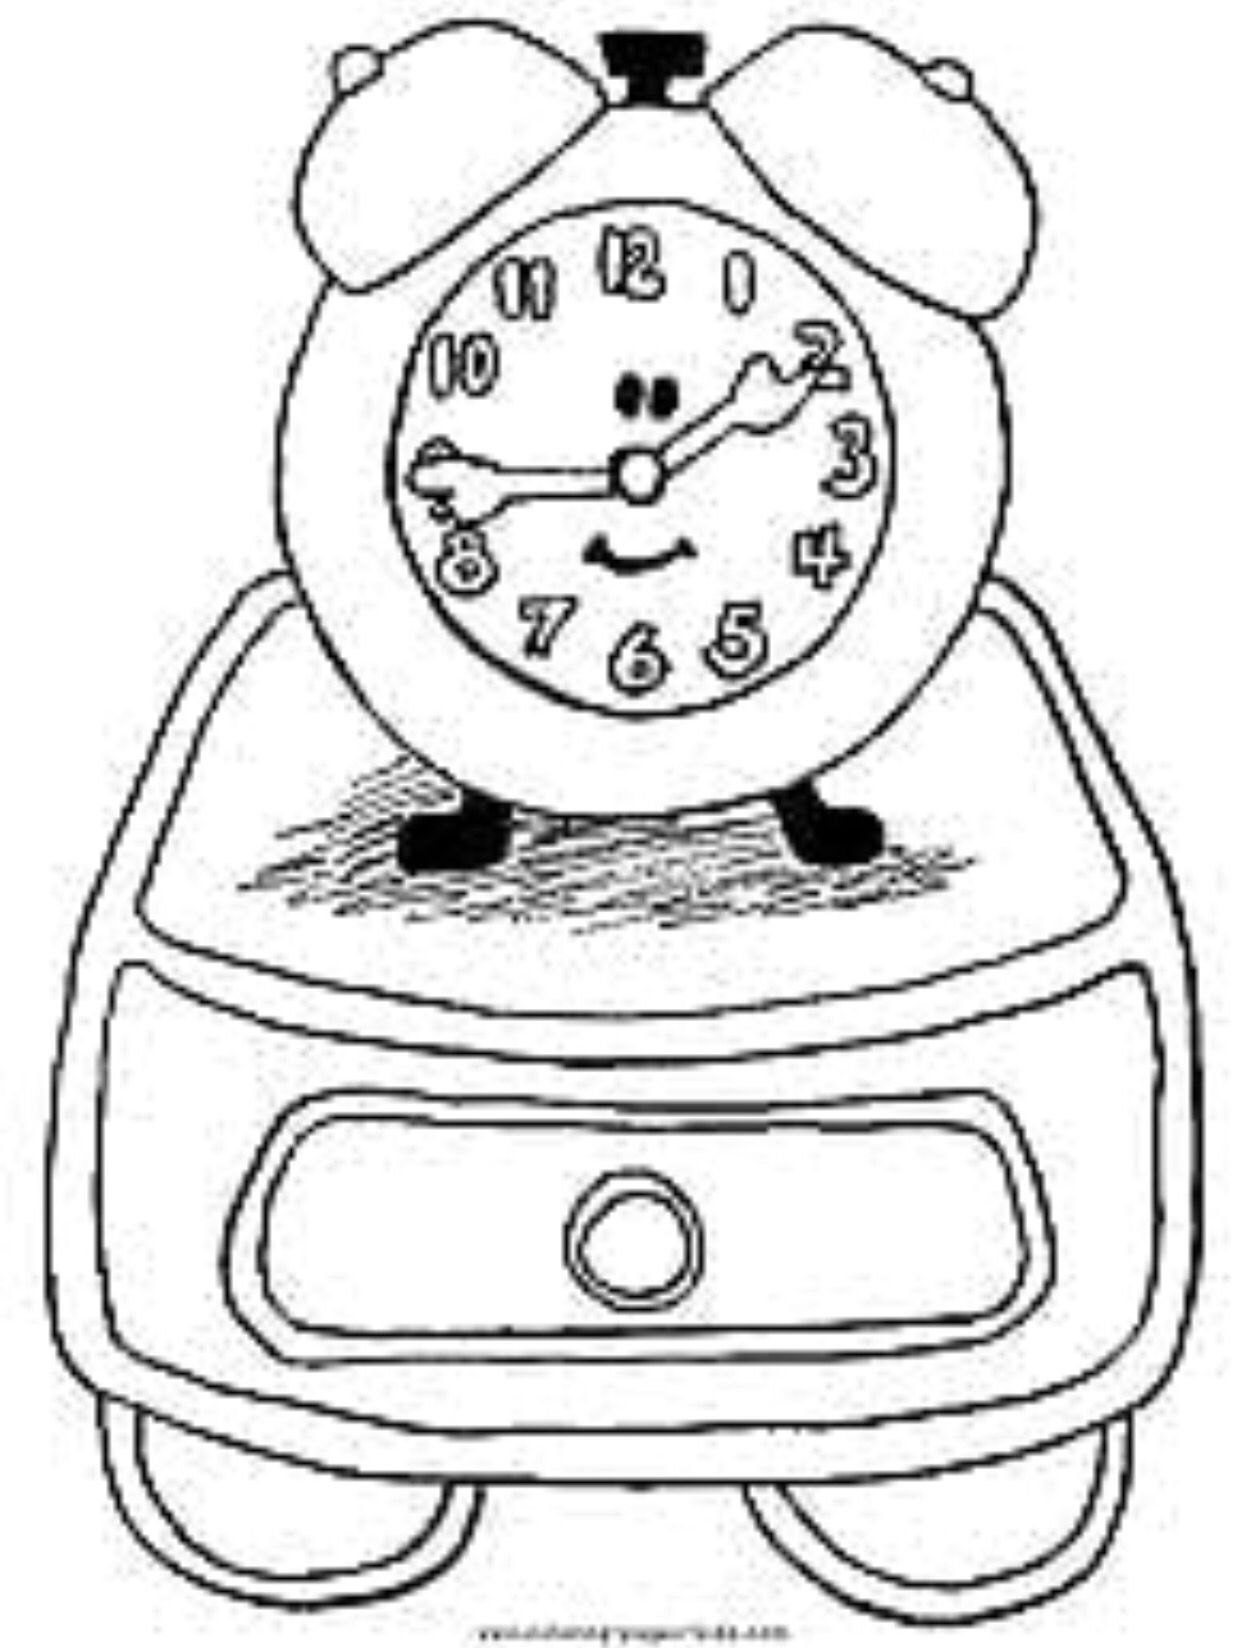 Раскраски часов для детей. Часы раскраска. Часы раскраска для детей. Будильник раскраска для детей. Часы для раскрашивания для детей.